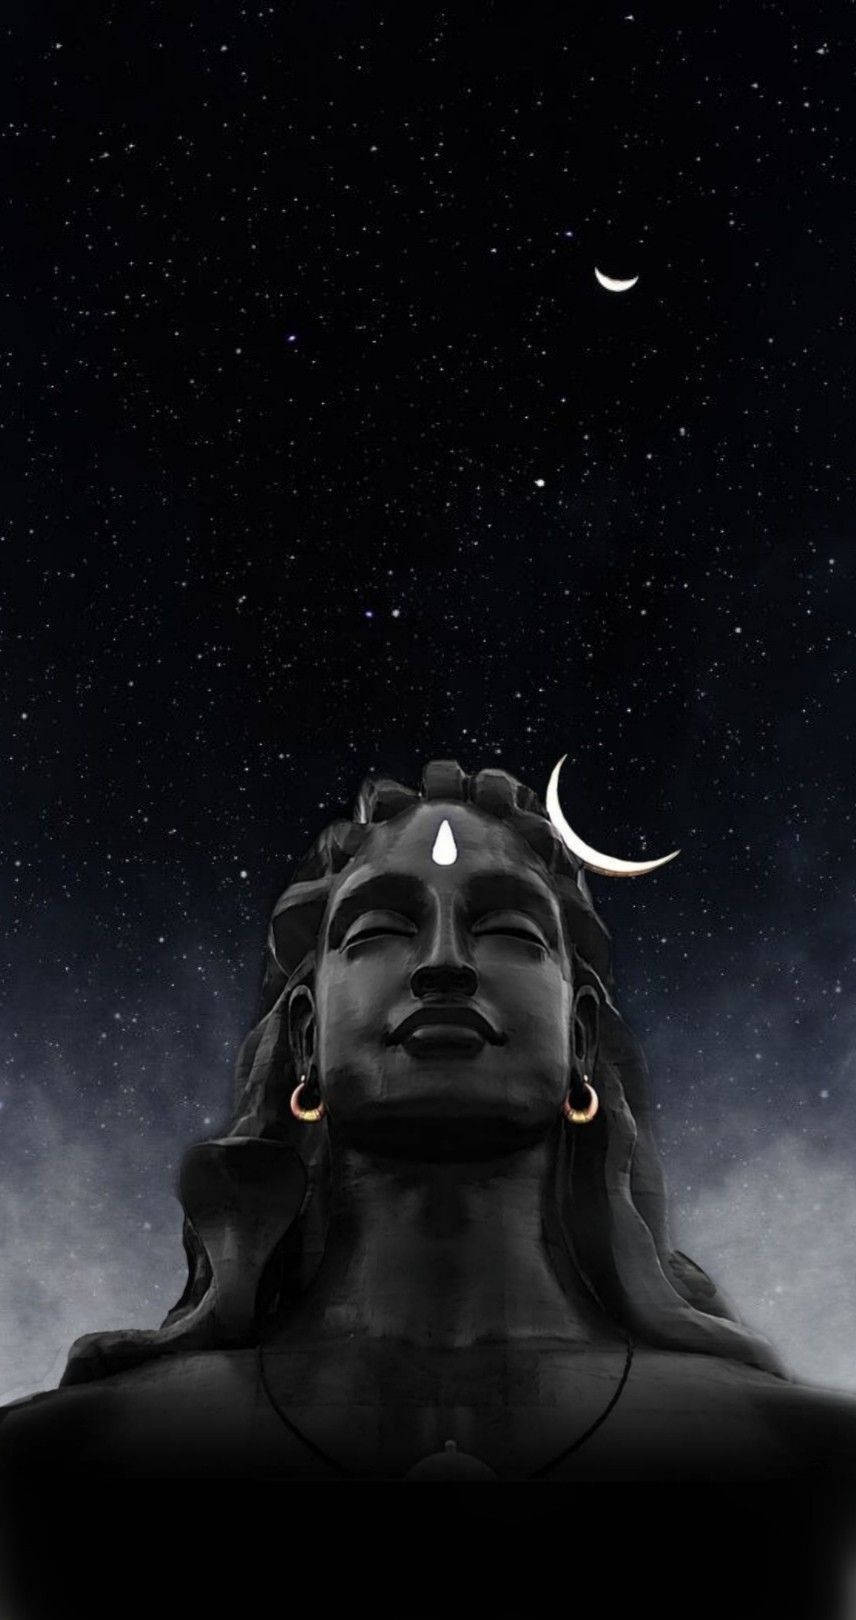 Dark Mahadev Bust Under Starry Sky Hd Wallpaper